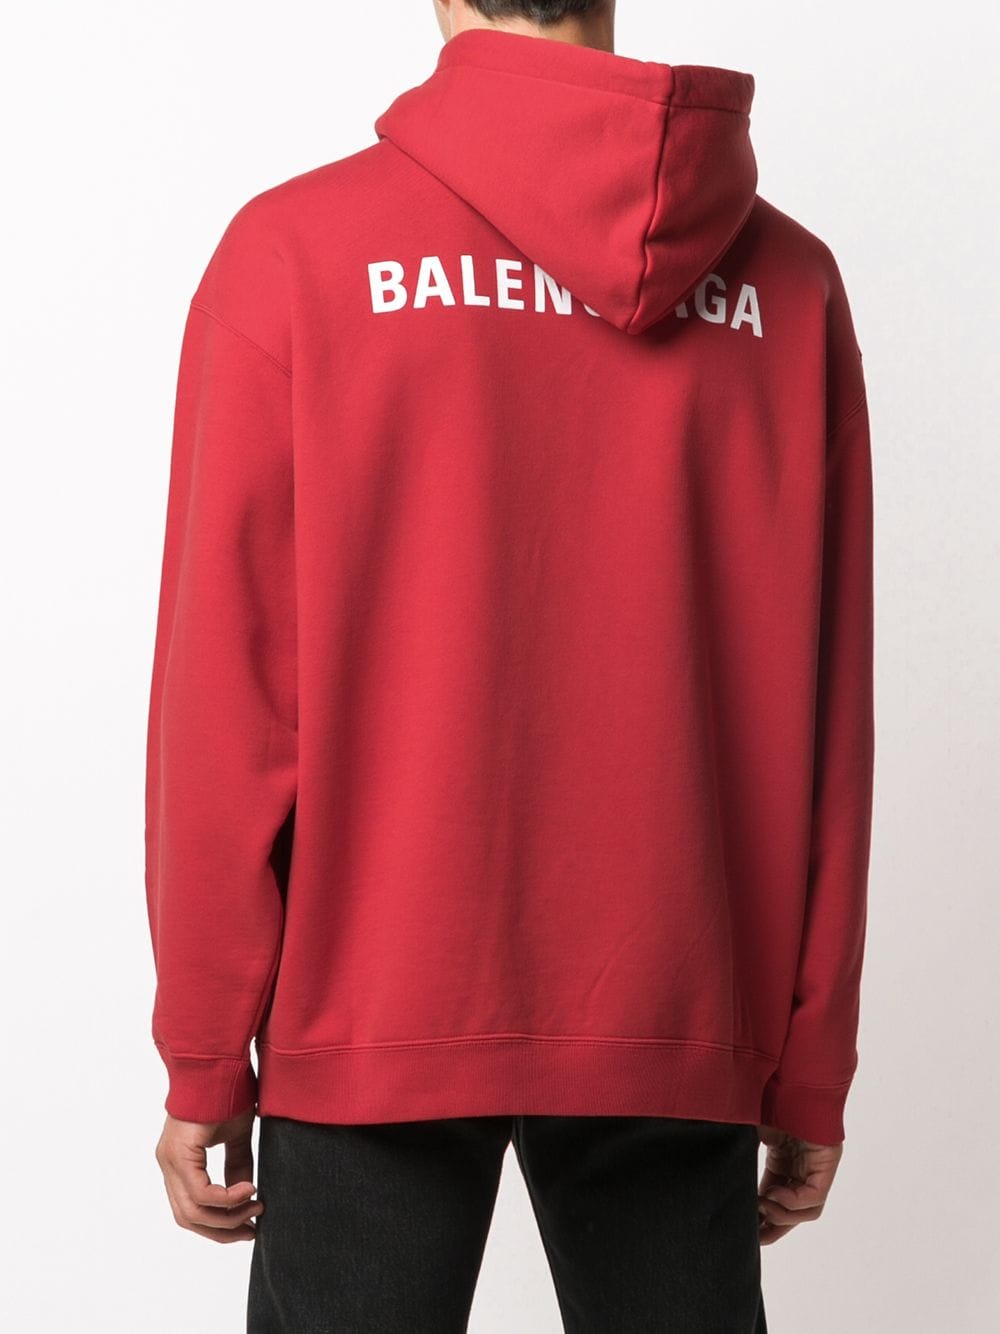 фото Balenciaga худи с логотипом